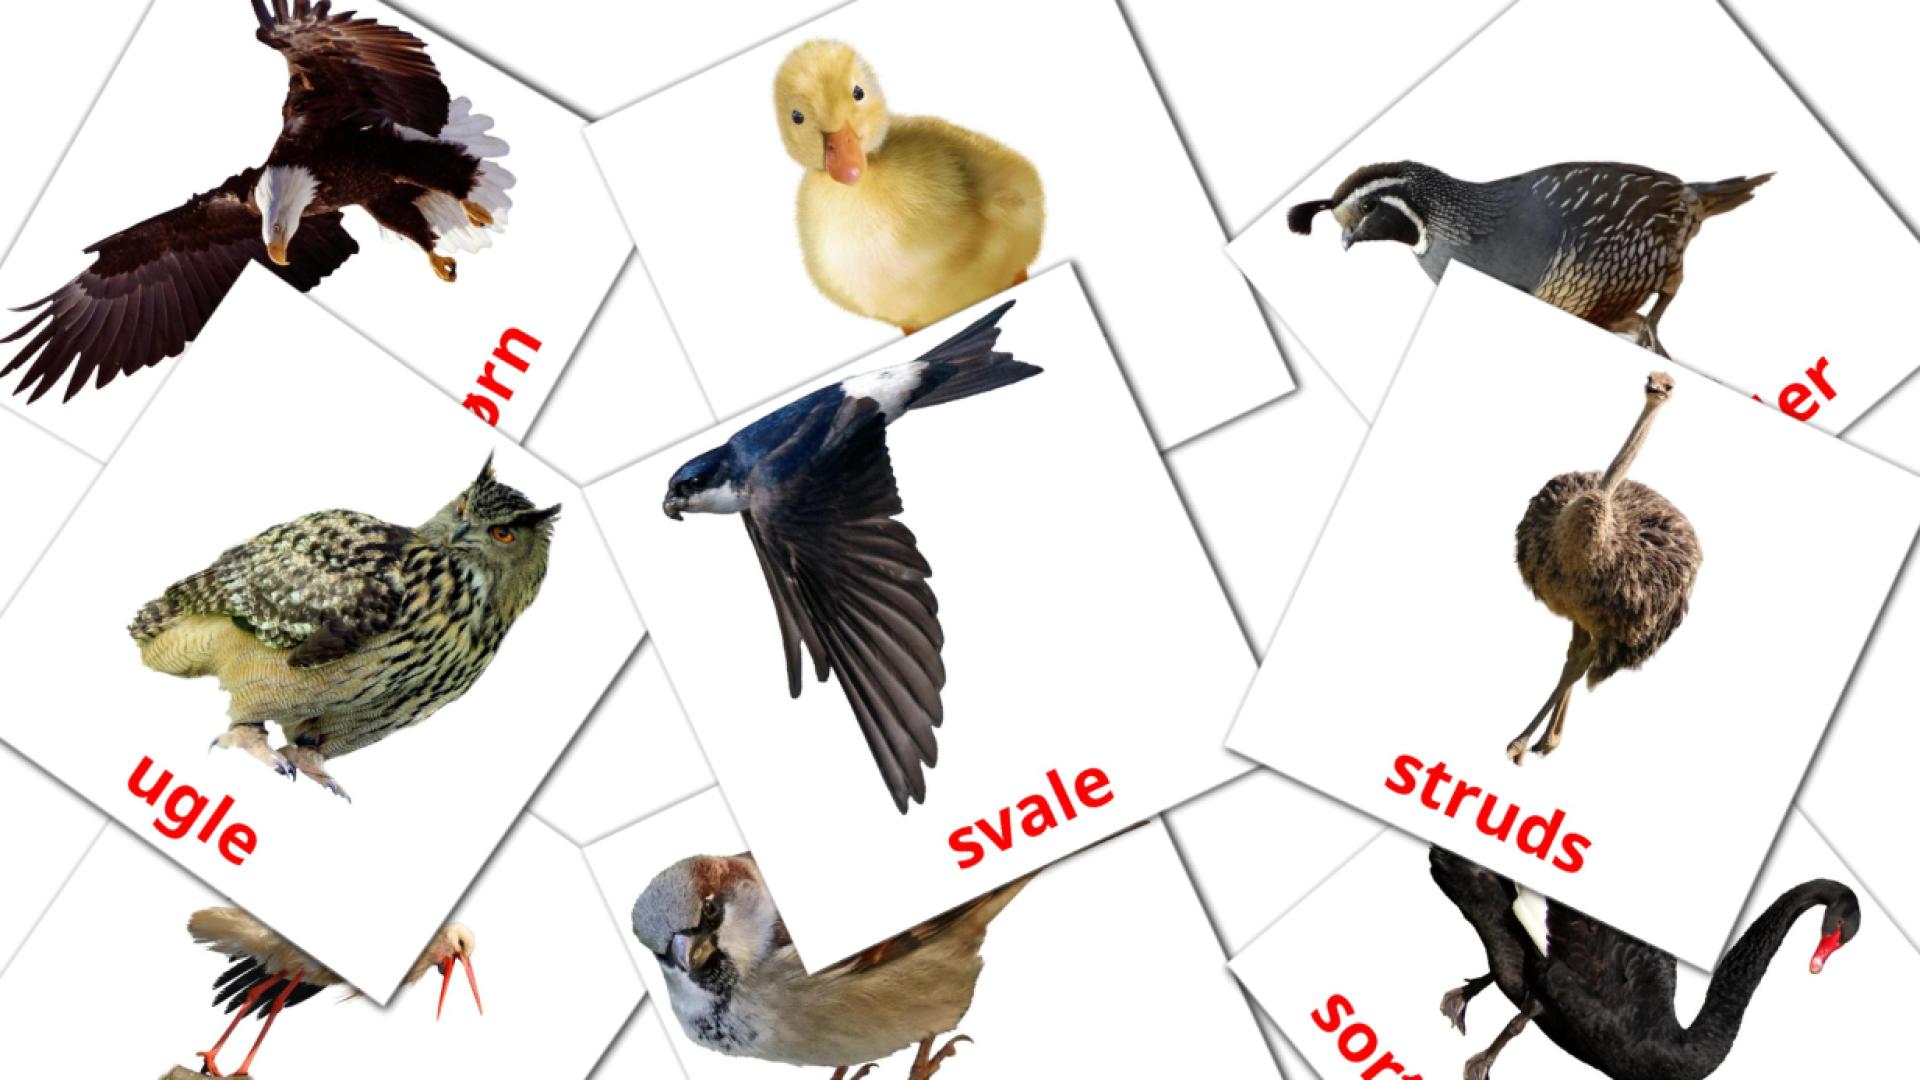 Fugle dansk woordenschat flashcards